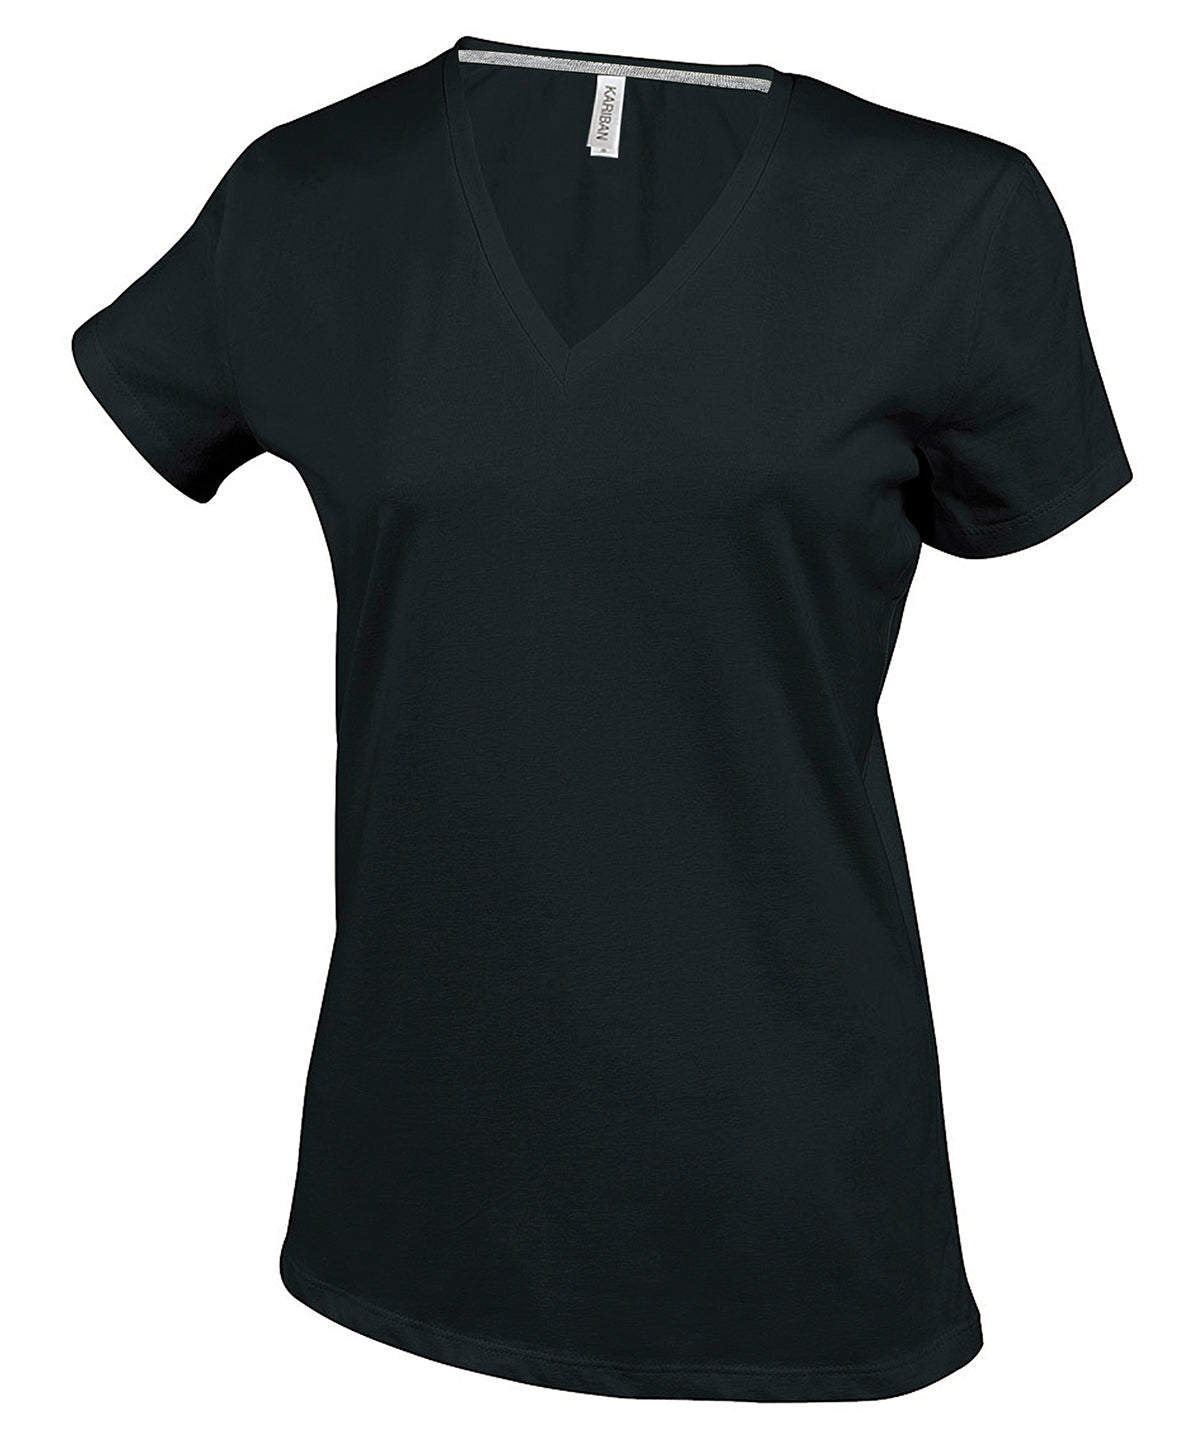 Stuttermabolir - Ladies' Short-sleeved V-neck T-shirt